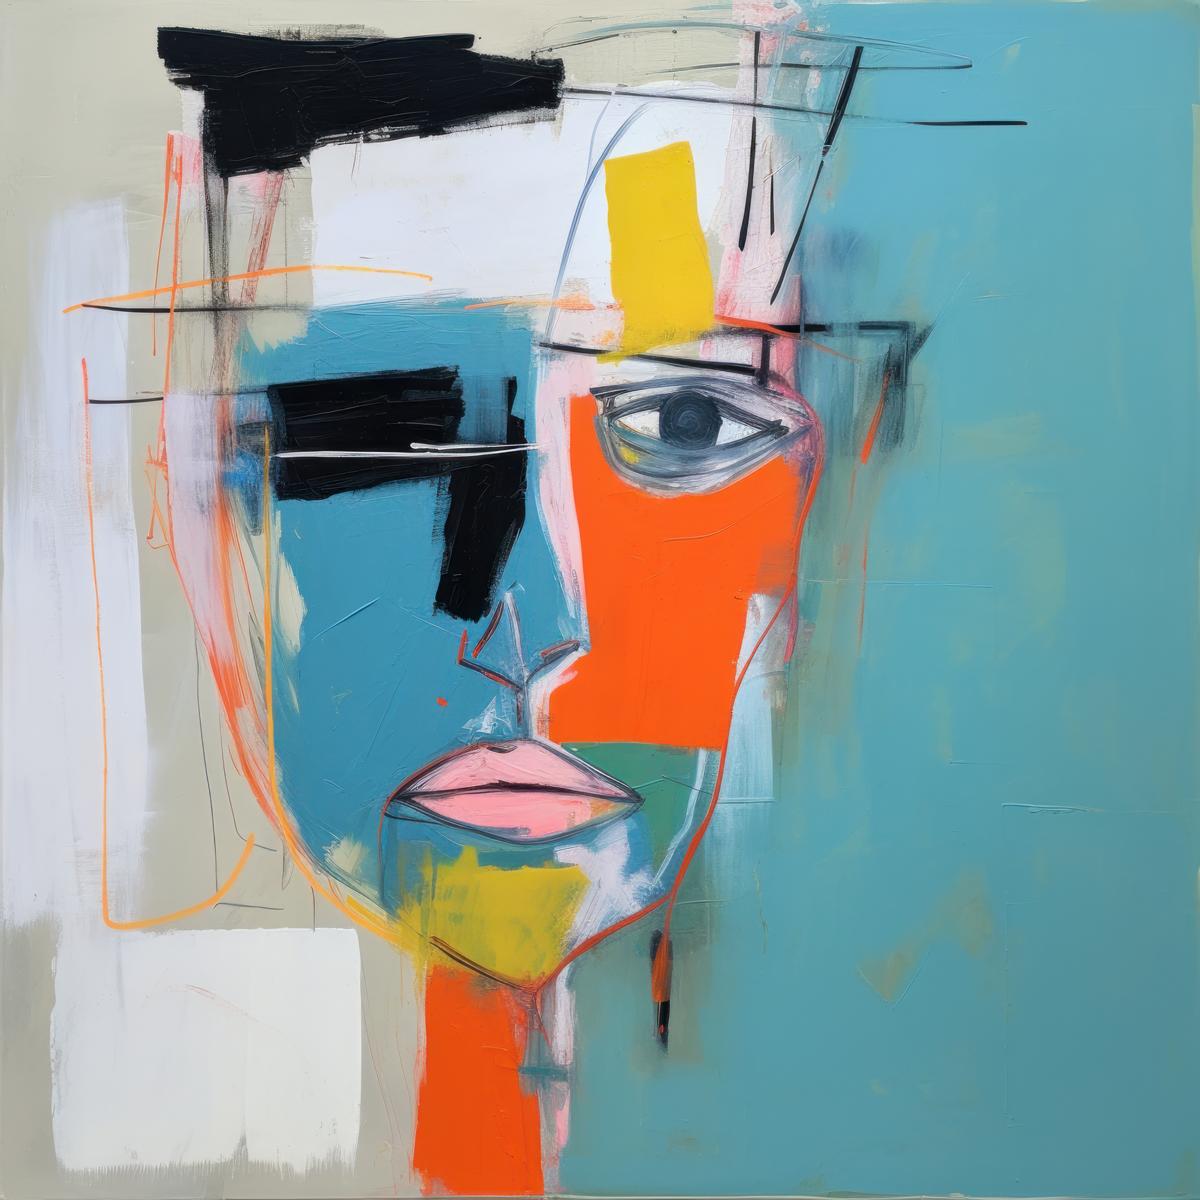 Portrait Painting Irena Orlov - Portrait cubiste abstrait - Collection de visages humains abstraits - HFC 19